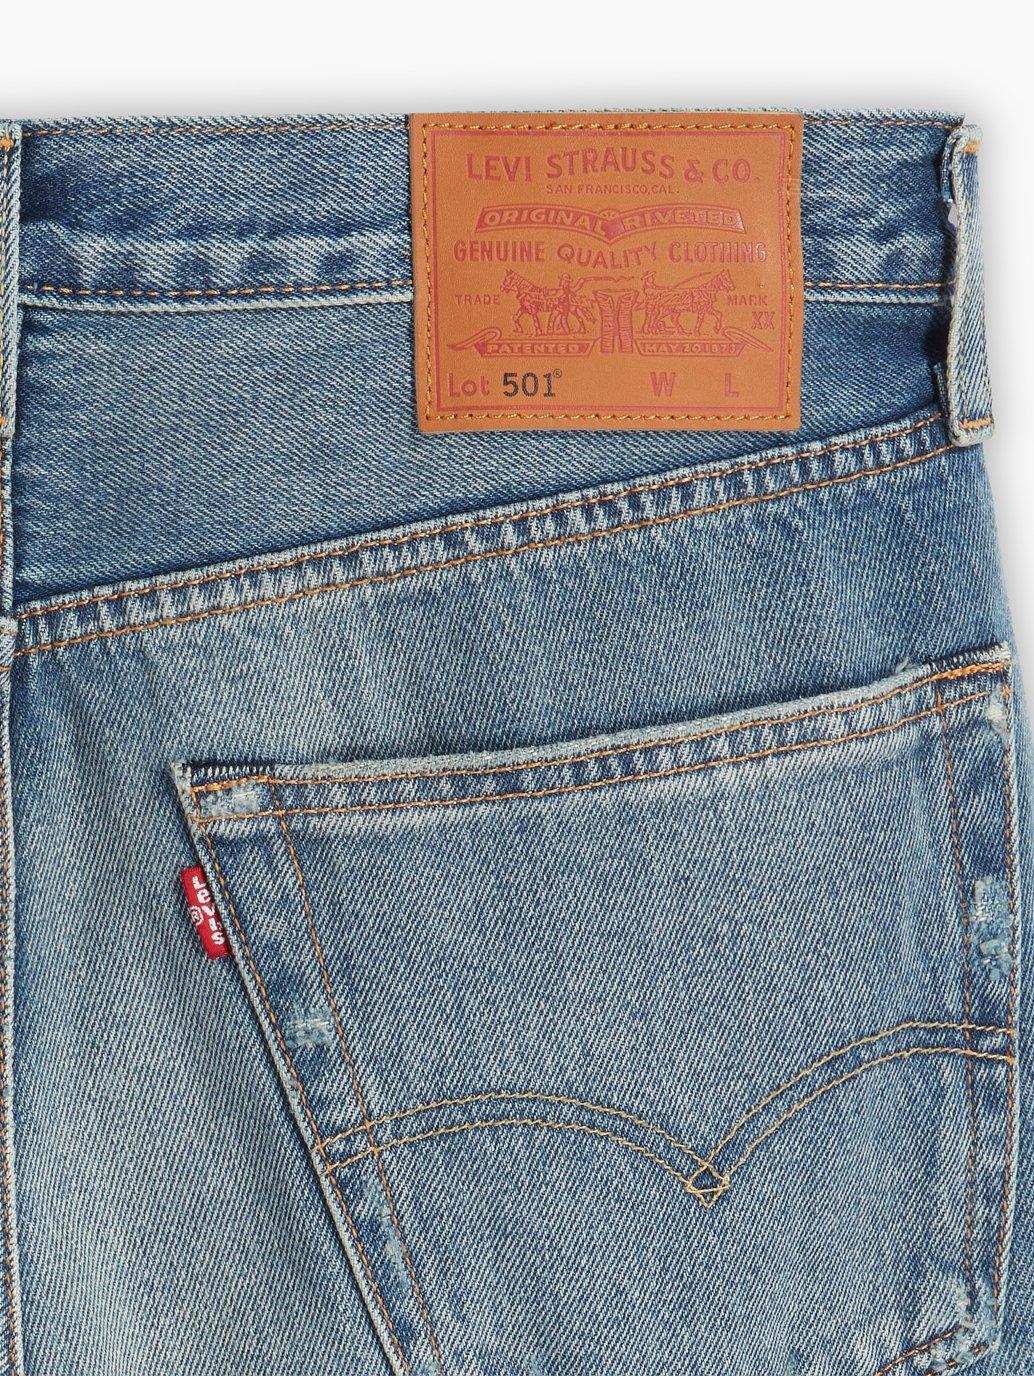 Buy Levi's® Men's 501® Original Jeans | Levi’s® Official Online Store SG